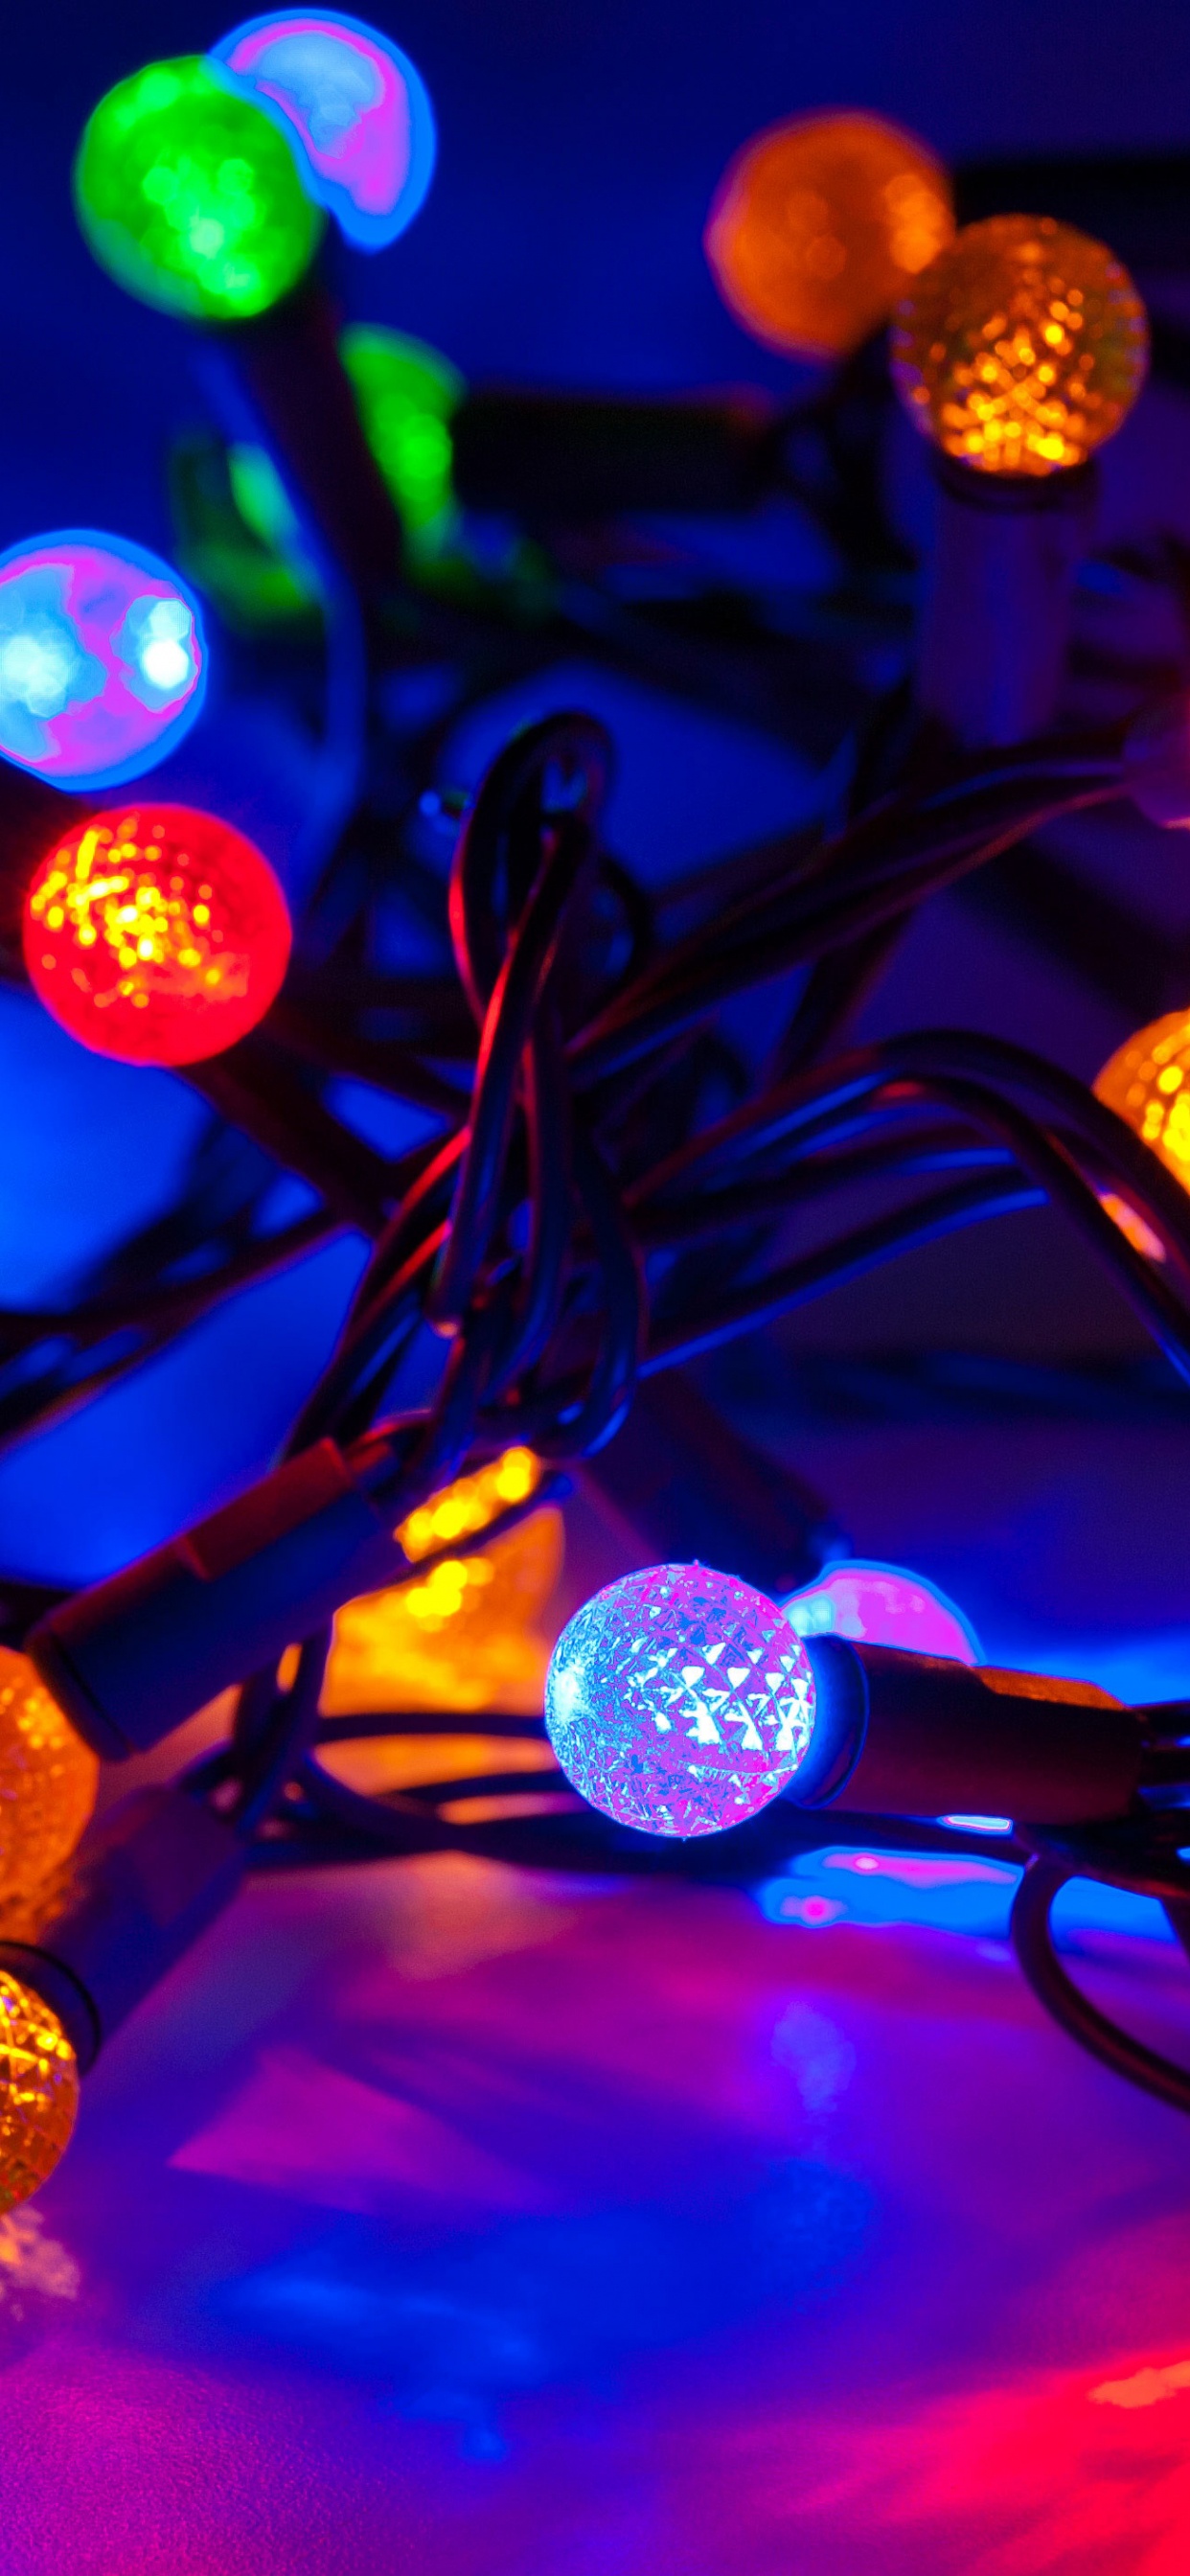 圣诞彩灯, 圣诞节那天, 光, 圣诞装饰, 发光二极管 壁纸 1242x2688 允许